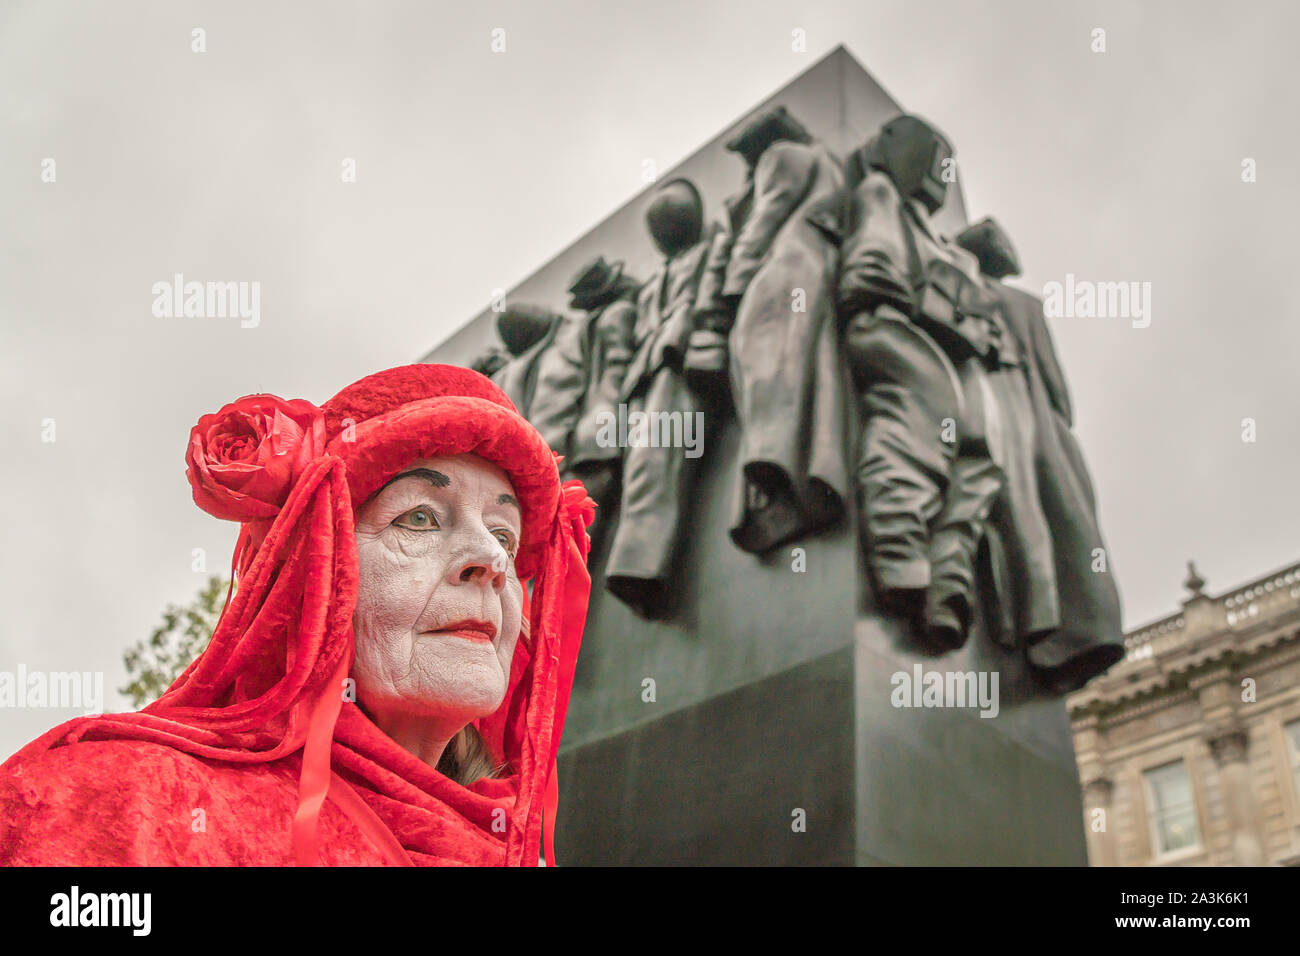 Whitehall, Londres, Royaume-Uni. - 7 octobre 2019 - XR ptotests - rouge 'Brigade' art group, au cours d'une performance de rue, 'la femme de la Seconde Guerre mondiale' en arrière-plan Banque D'Images